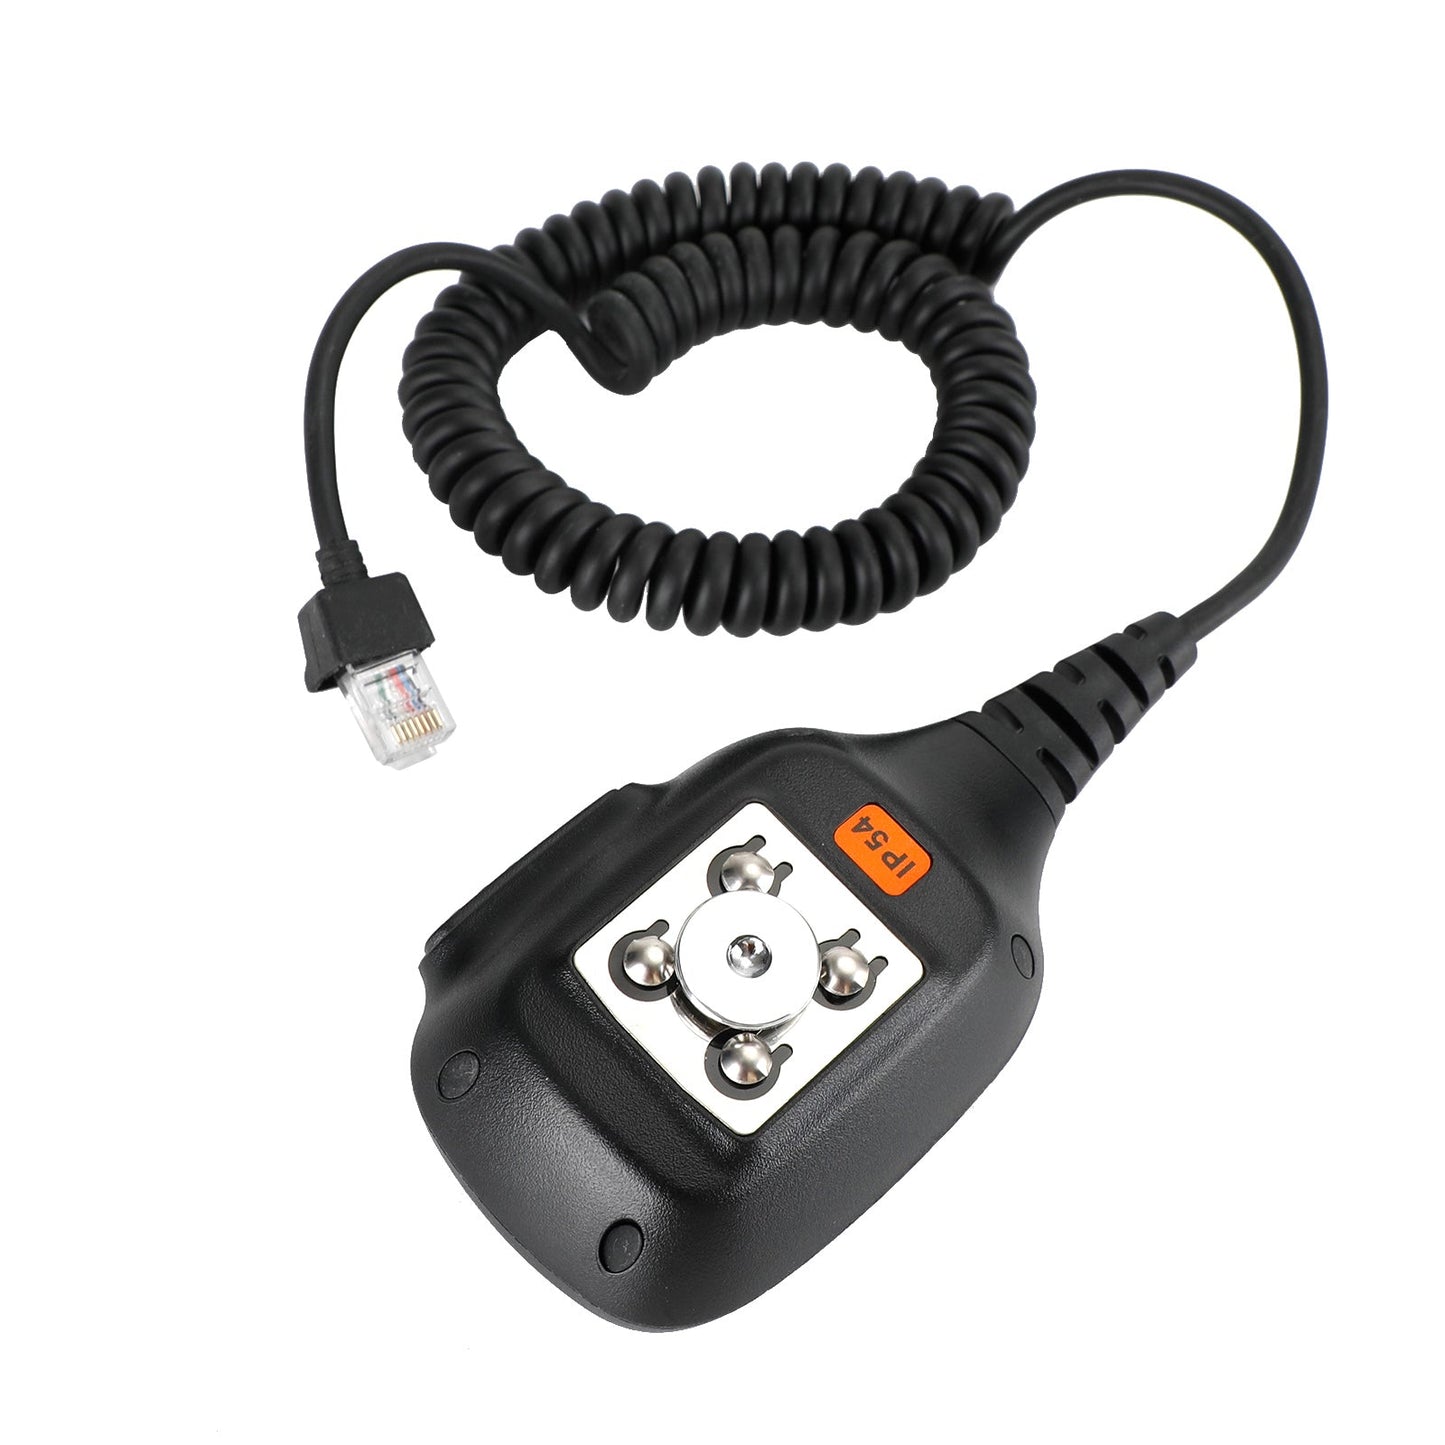 Microfono digitale DMR per codifica auto, adatto per radio walkie-talkie TYT MD9600